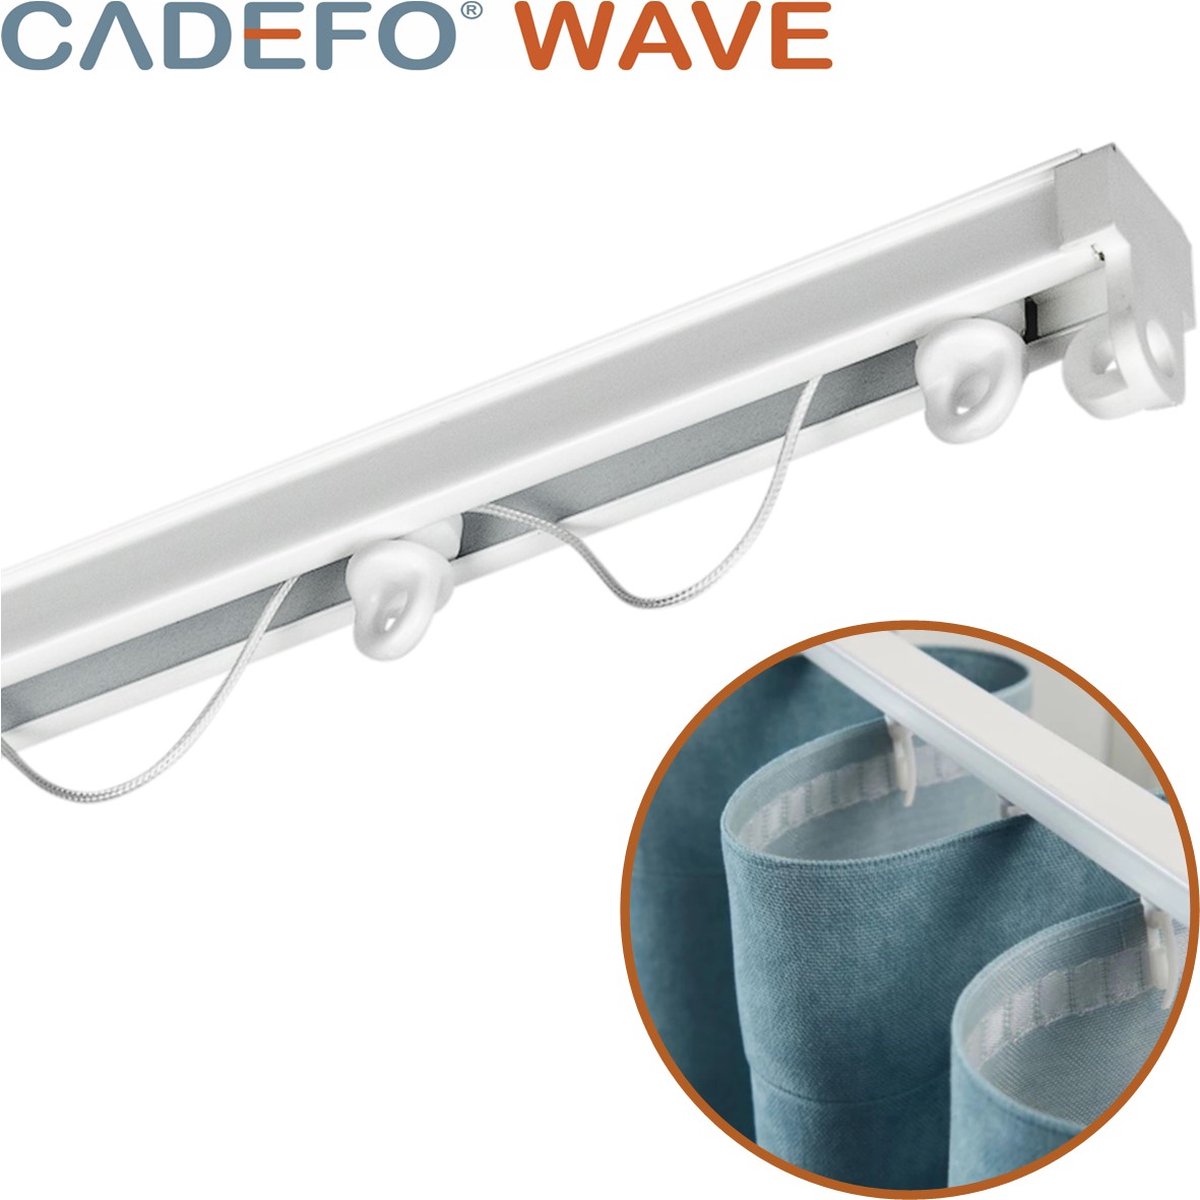 CADEFO WAVE (351 - 400 cm) Gordijnrails - Compleet op maat! - UIT 1 STUK - Leverbaar tot 6 meter - Plafondbevestiging - Lengte 355 cm